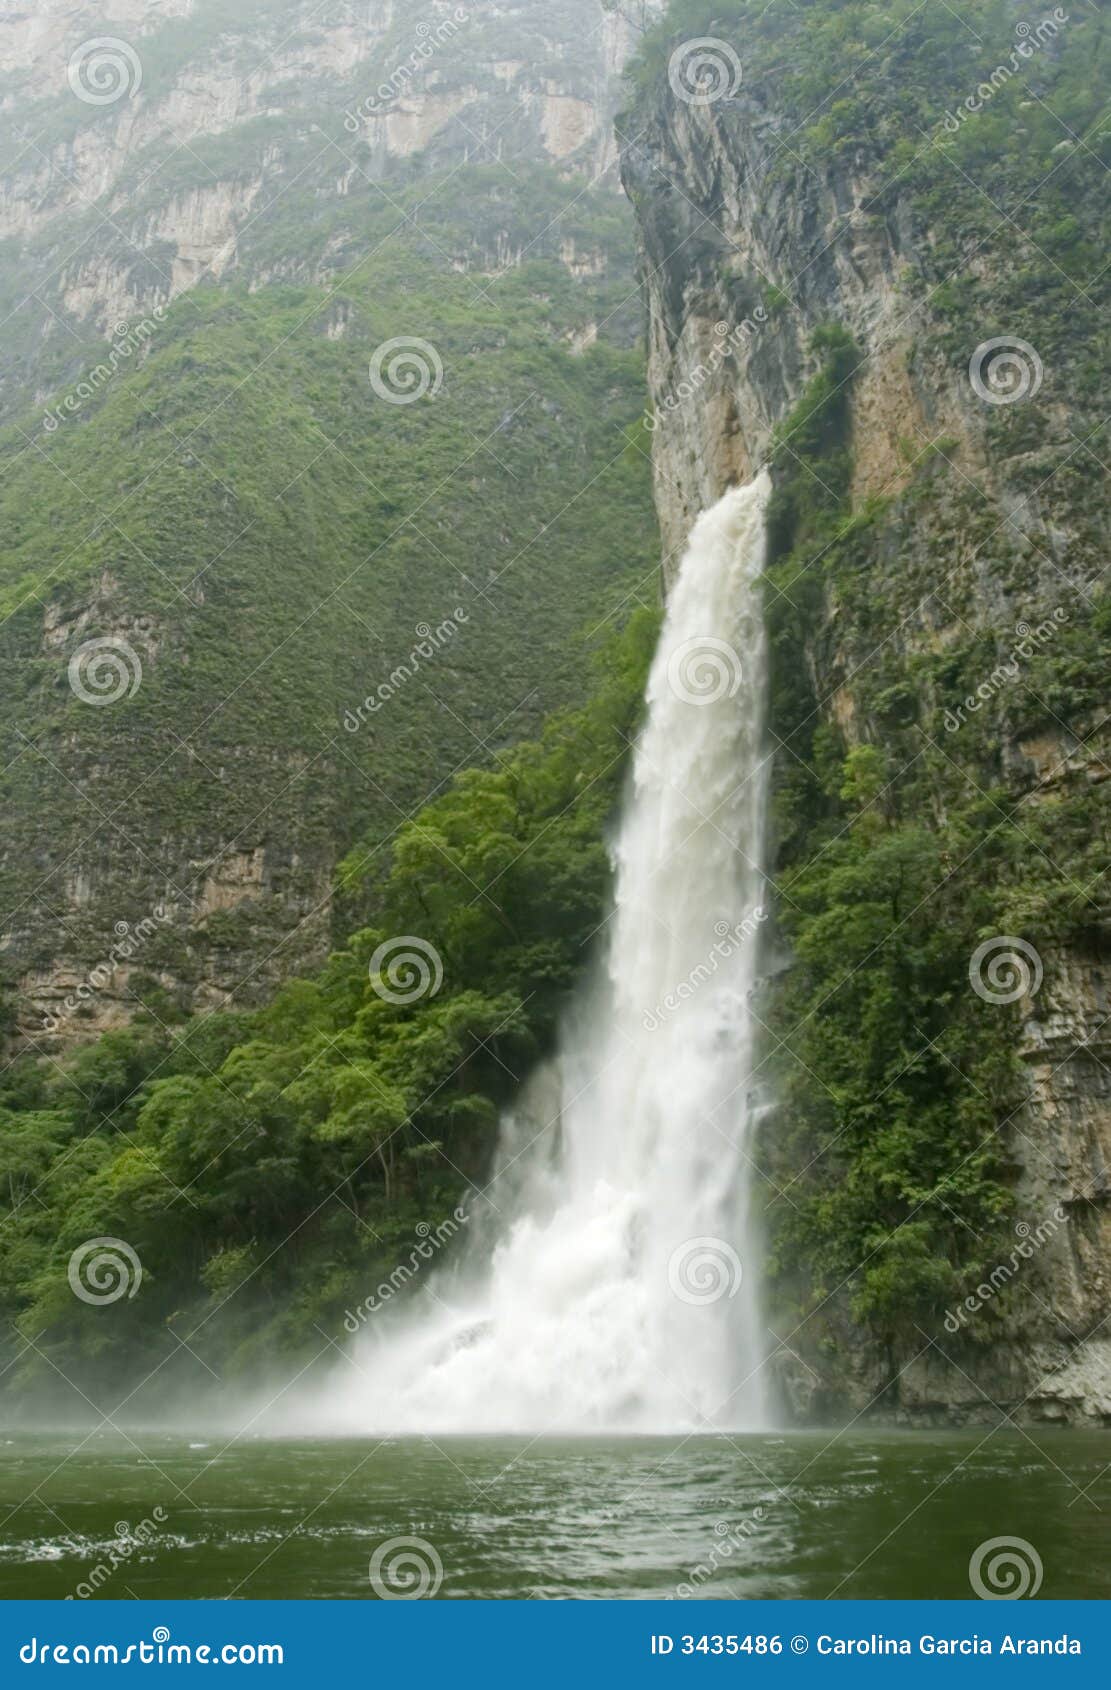 waterfall in sumidero canyon